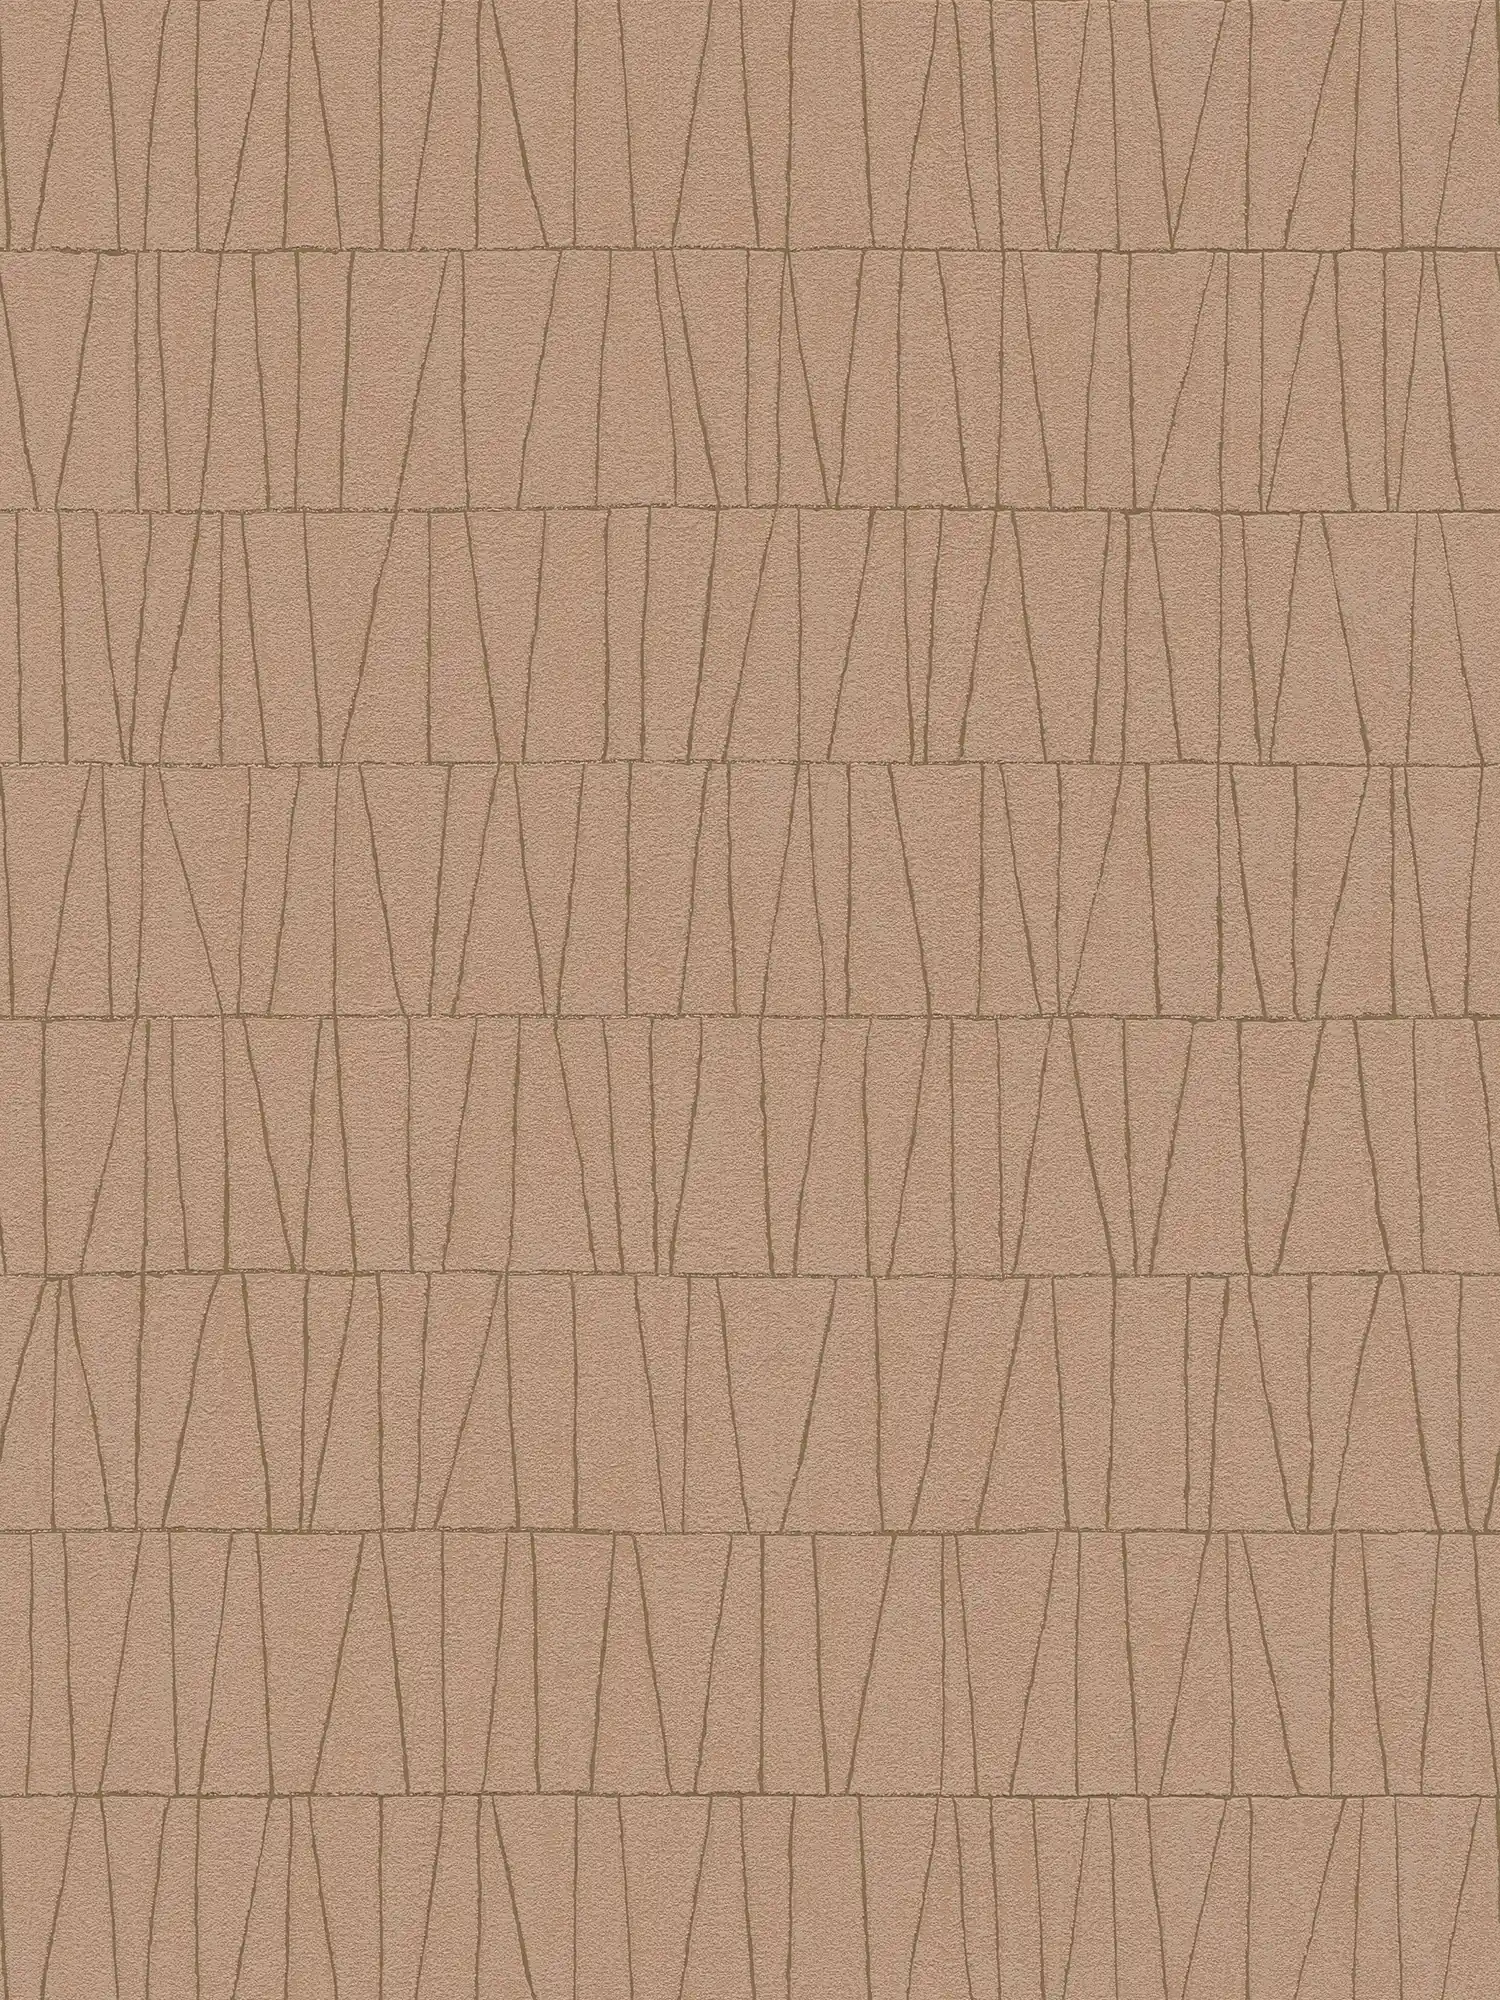 Abstrakte Mustertapete mit Linien Details – Altrosa, Gold
